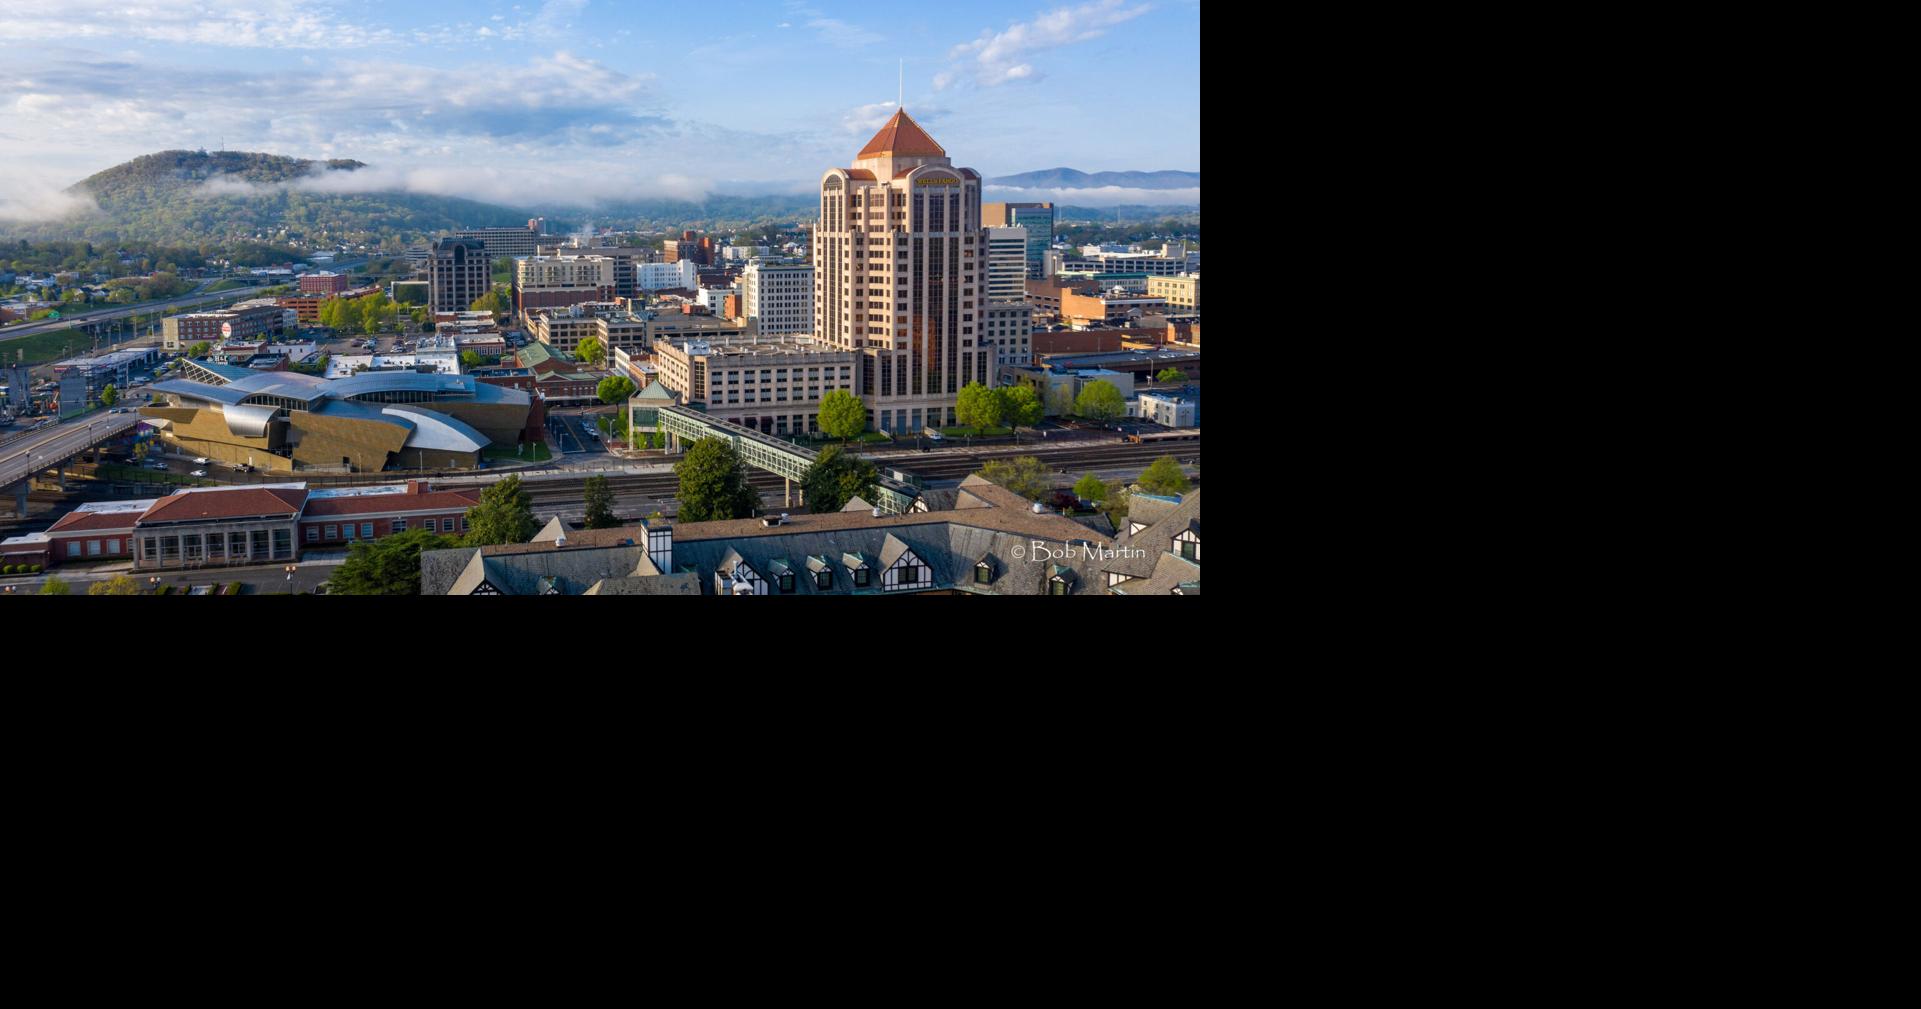 Nelson: Roanoke seeks citizen input in new economic development strategy